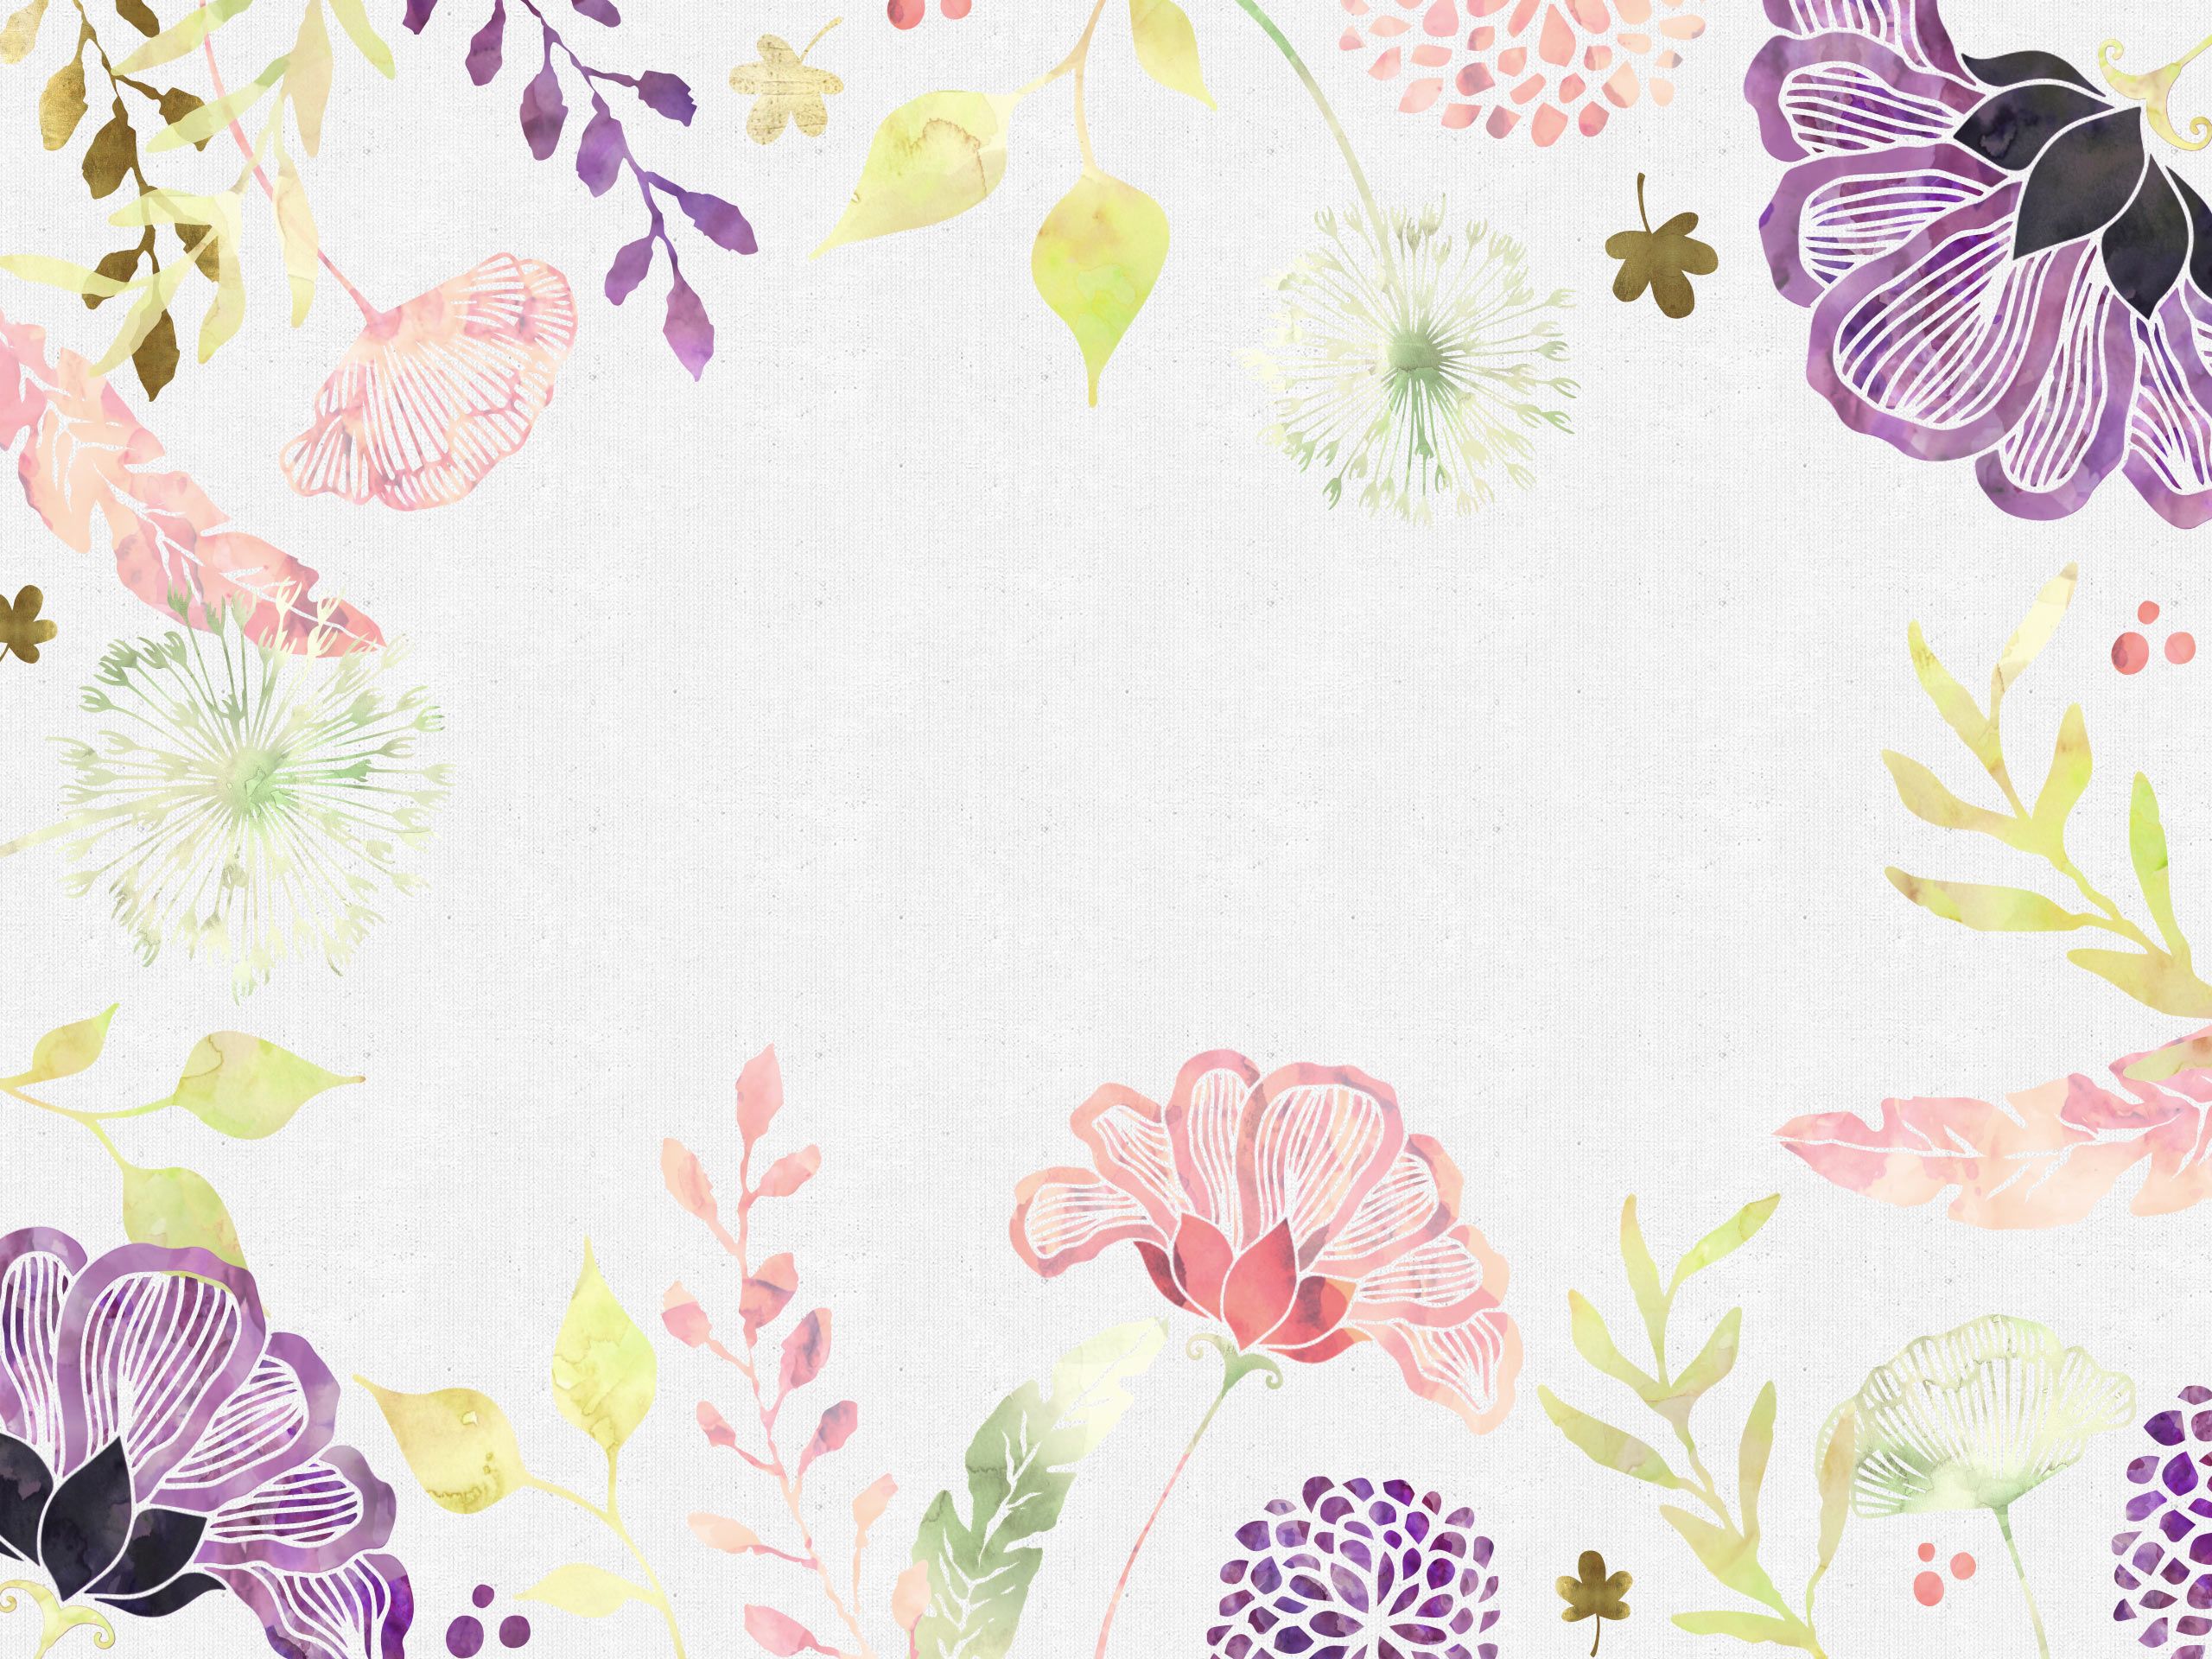 68+] Free Floral Desktop Wallpaper - WallpaperSafari